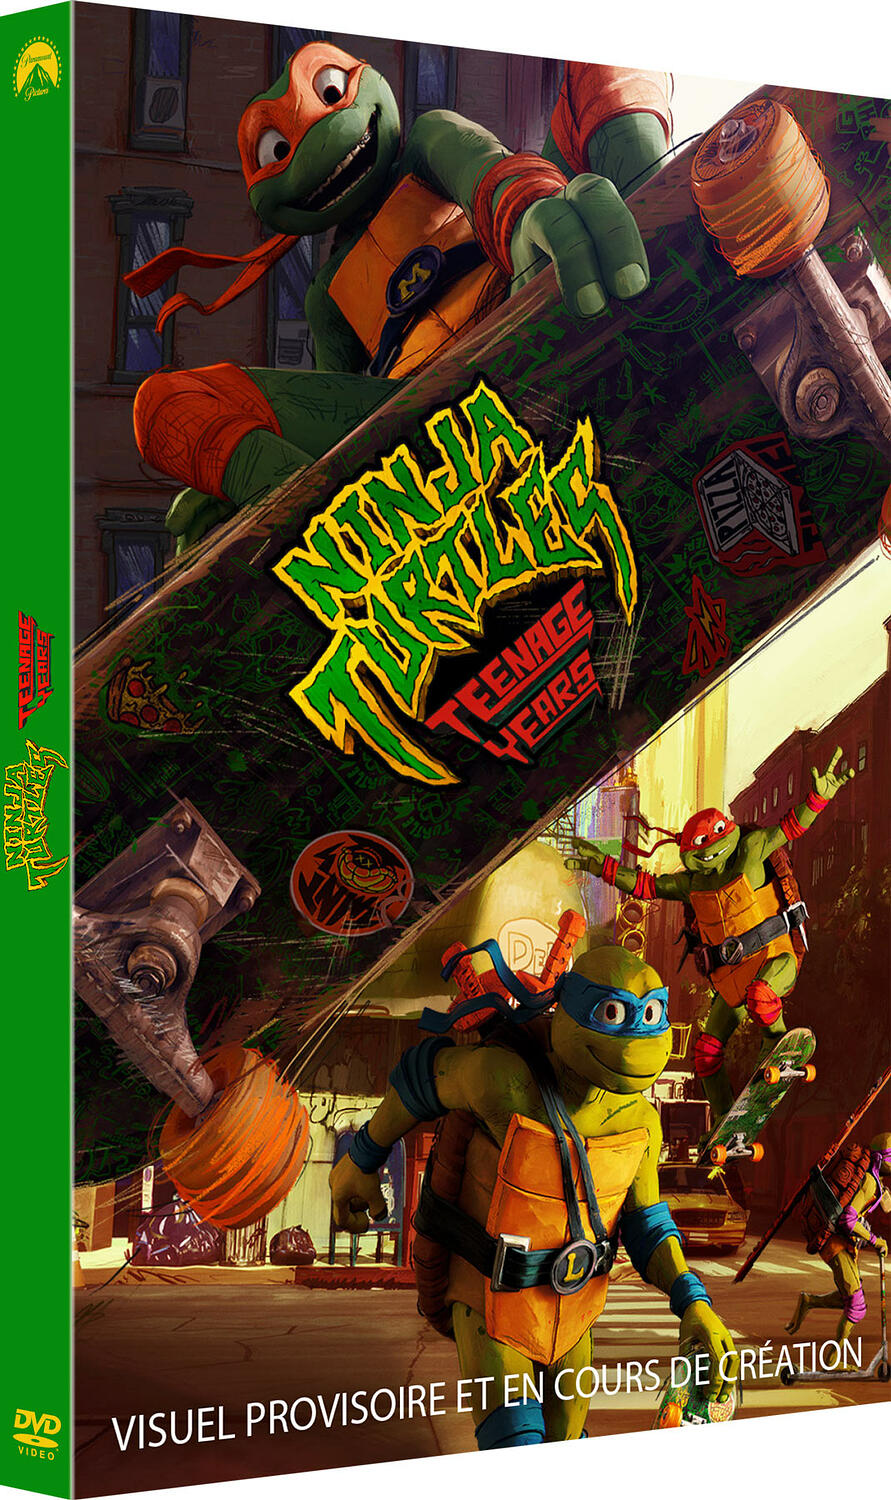 Ninja Turtles : Teenage Years